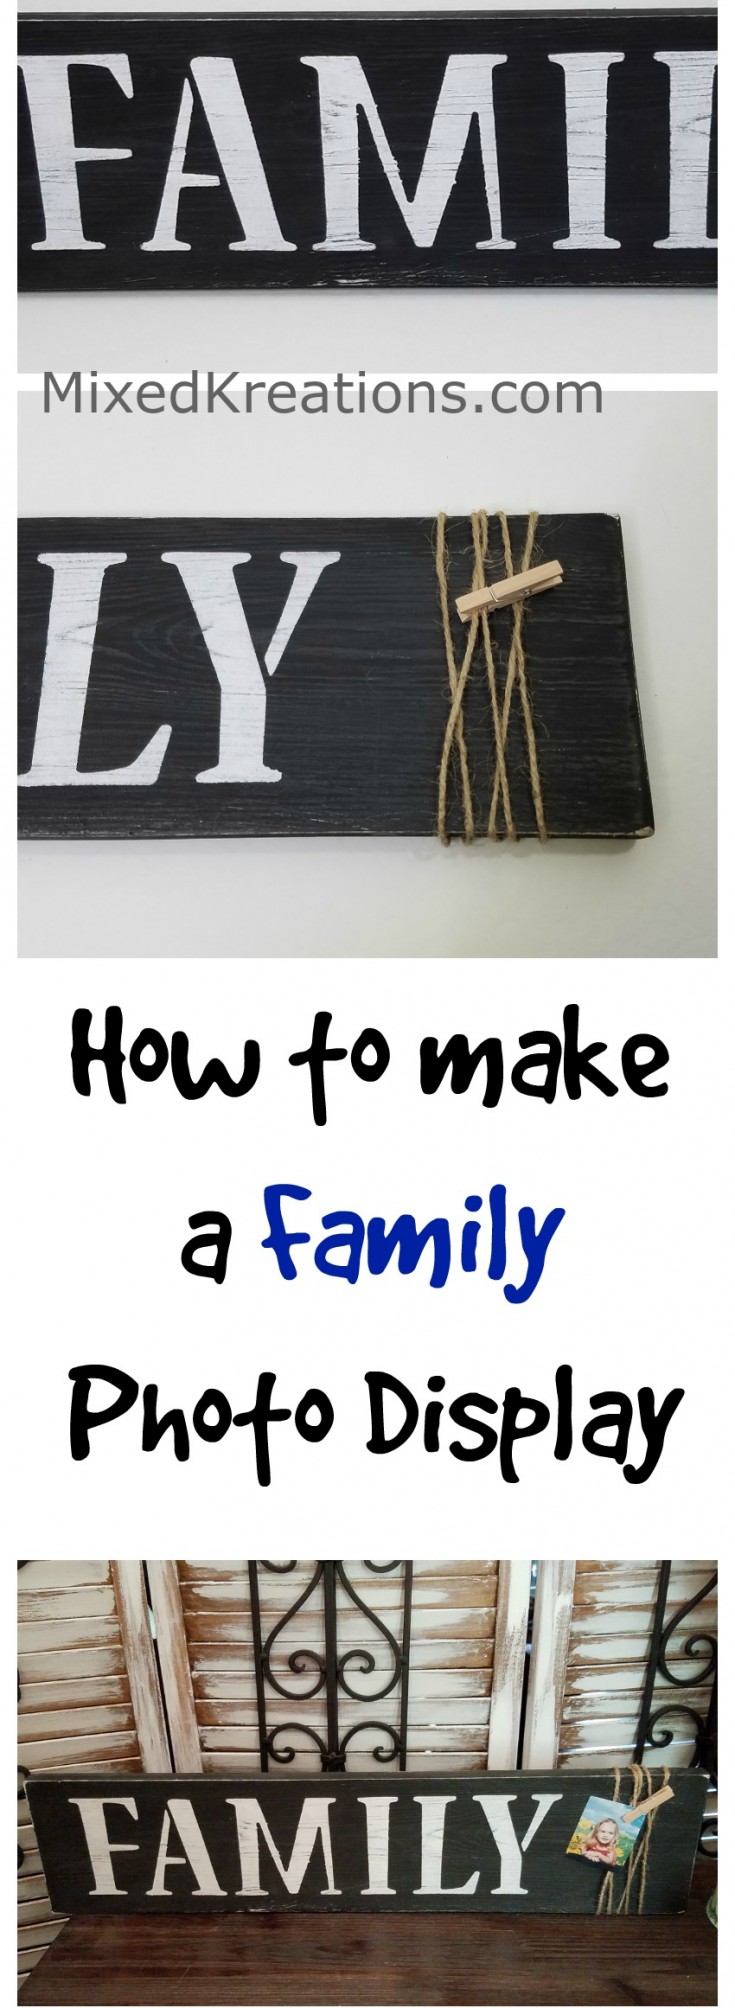 how to make a family photo display sign | diy family photo display #Diy #PhotoDisplay #Family #Sign MixedKreations.com